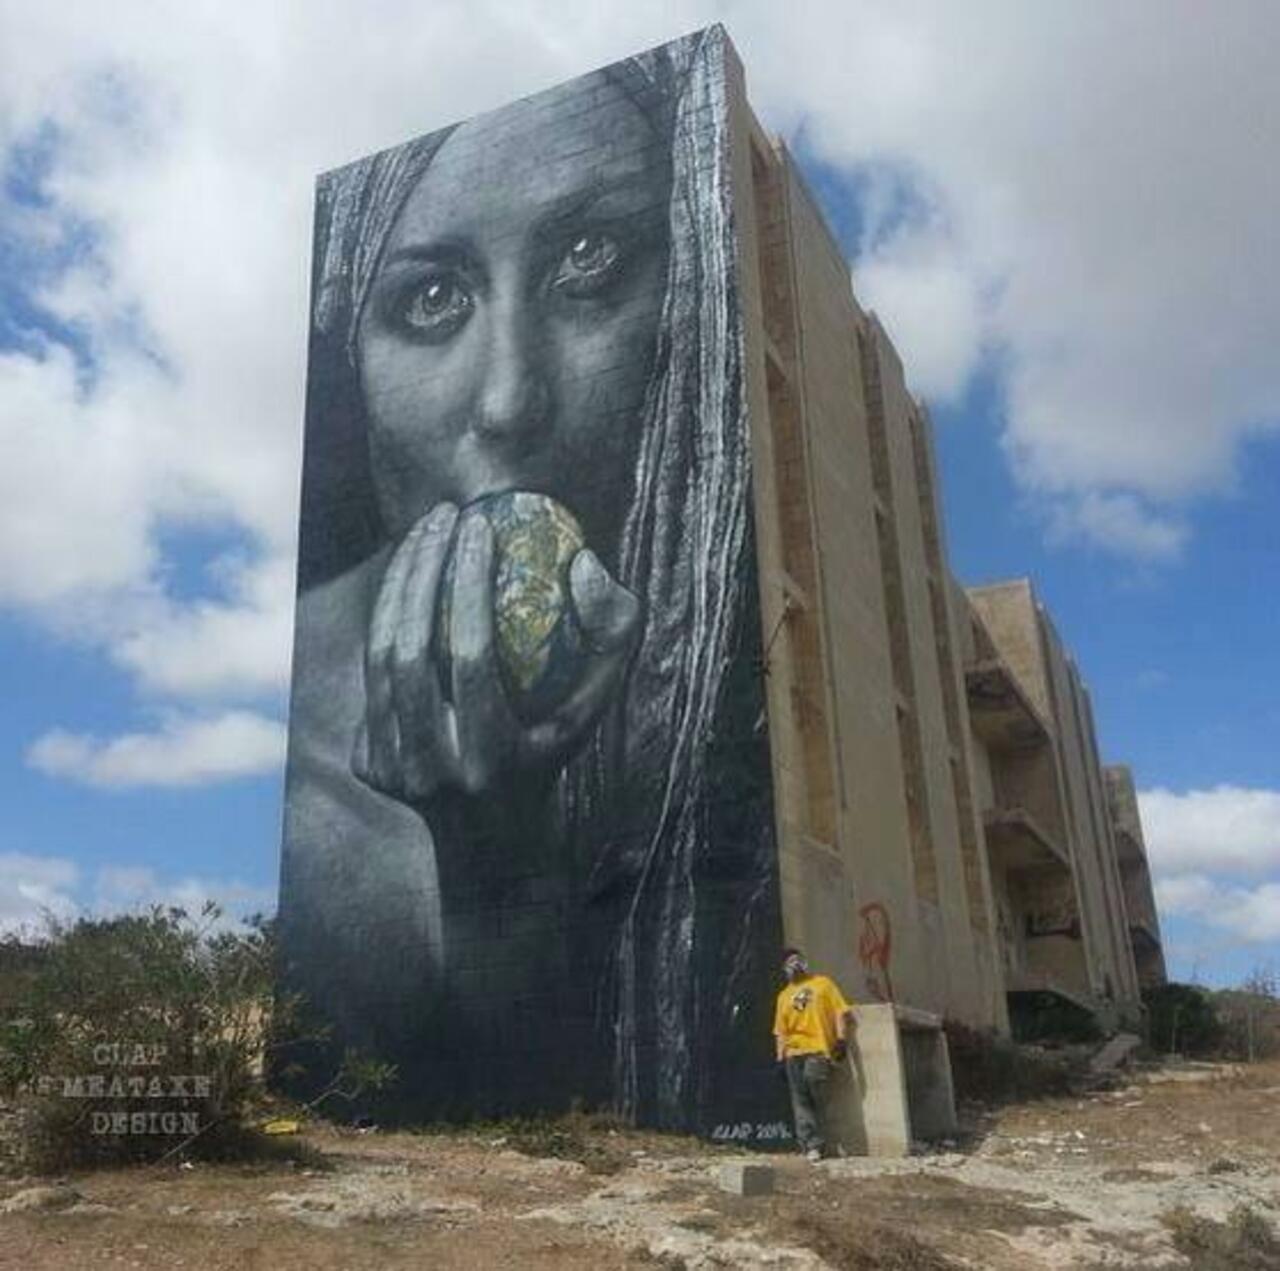 RT @designopinion: Artist Meataxe new awesome large scale Street Art mural in Malta #art #graffiti #mural #streetart http://t.co/E6z9GtPfe3